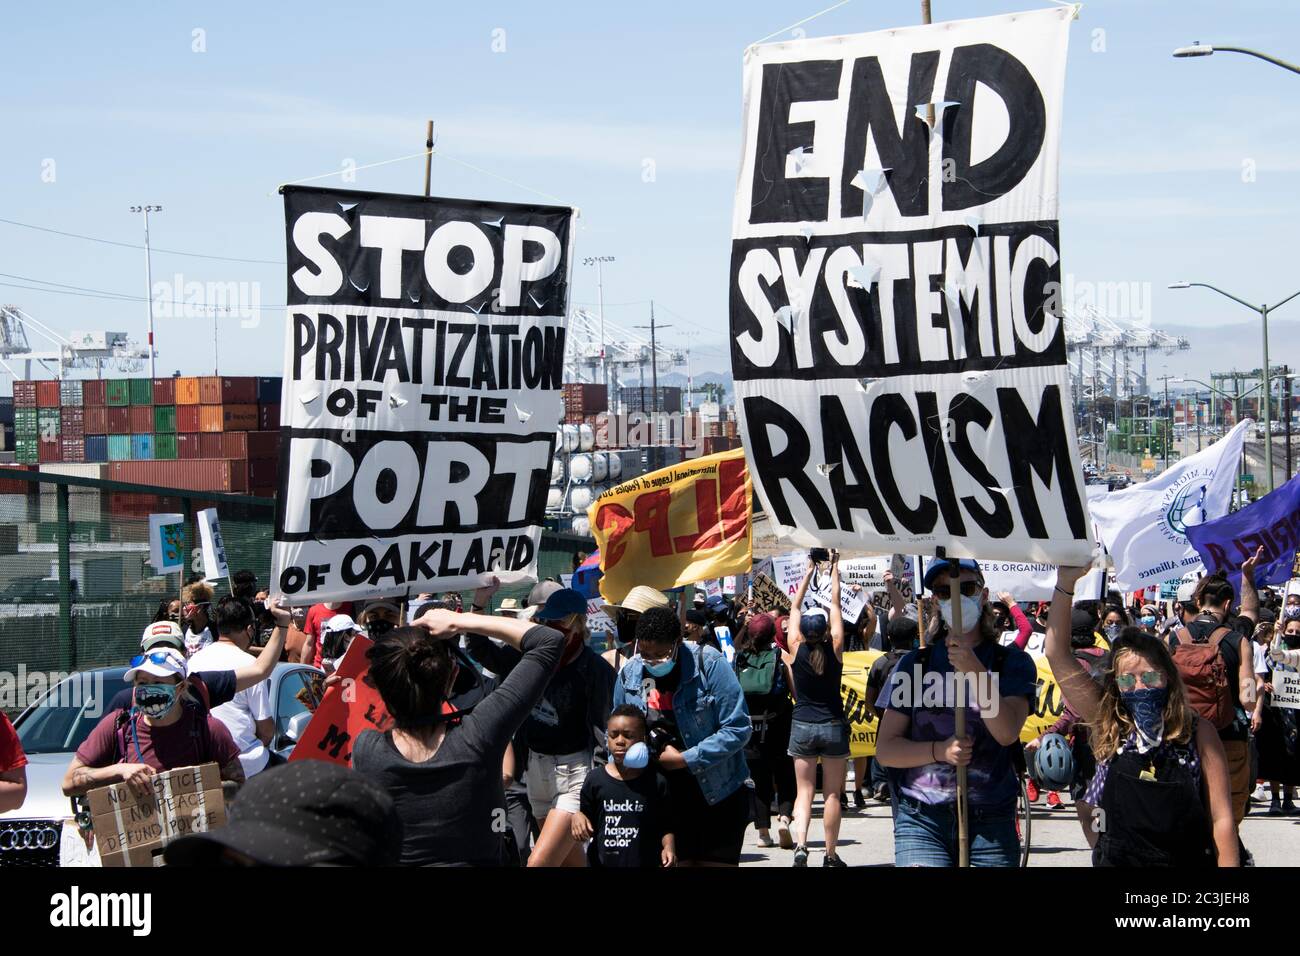 Demonstranten tragen am 19. Juni 2020 im Hafen von Oakland Zeichen gegen Rassismus und Privatisierung bei einem Protest gegen Black Lives Matter. Stockfoto